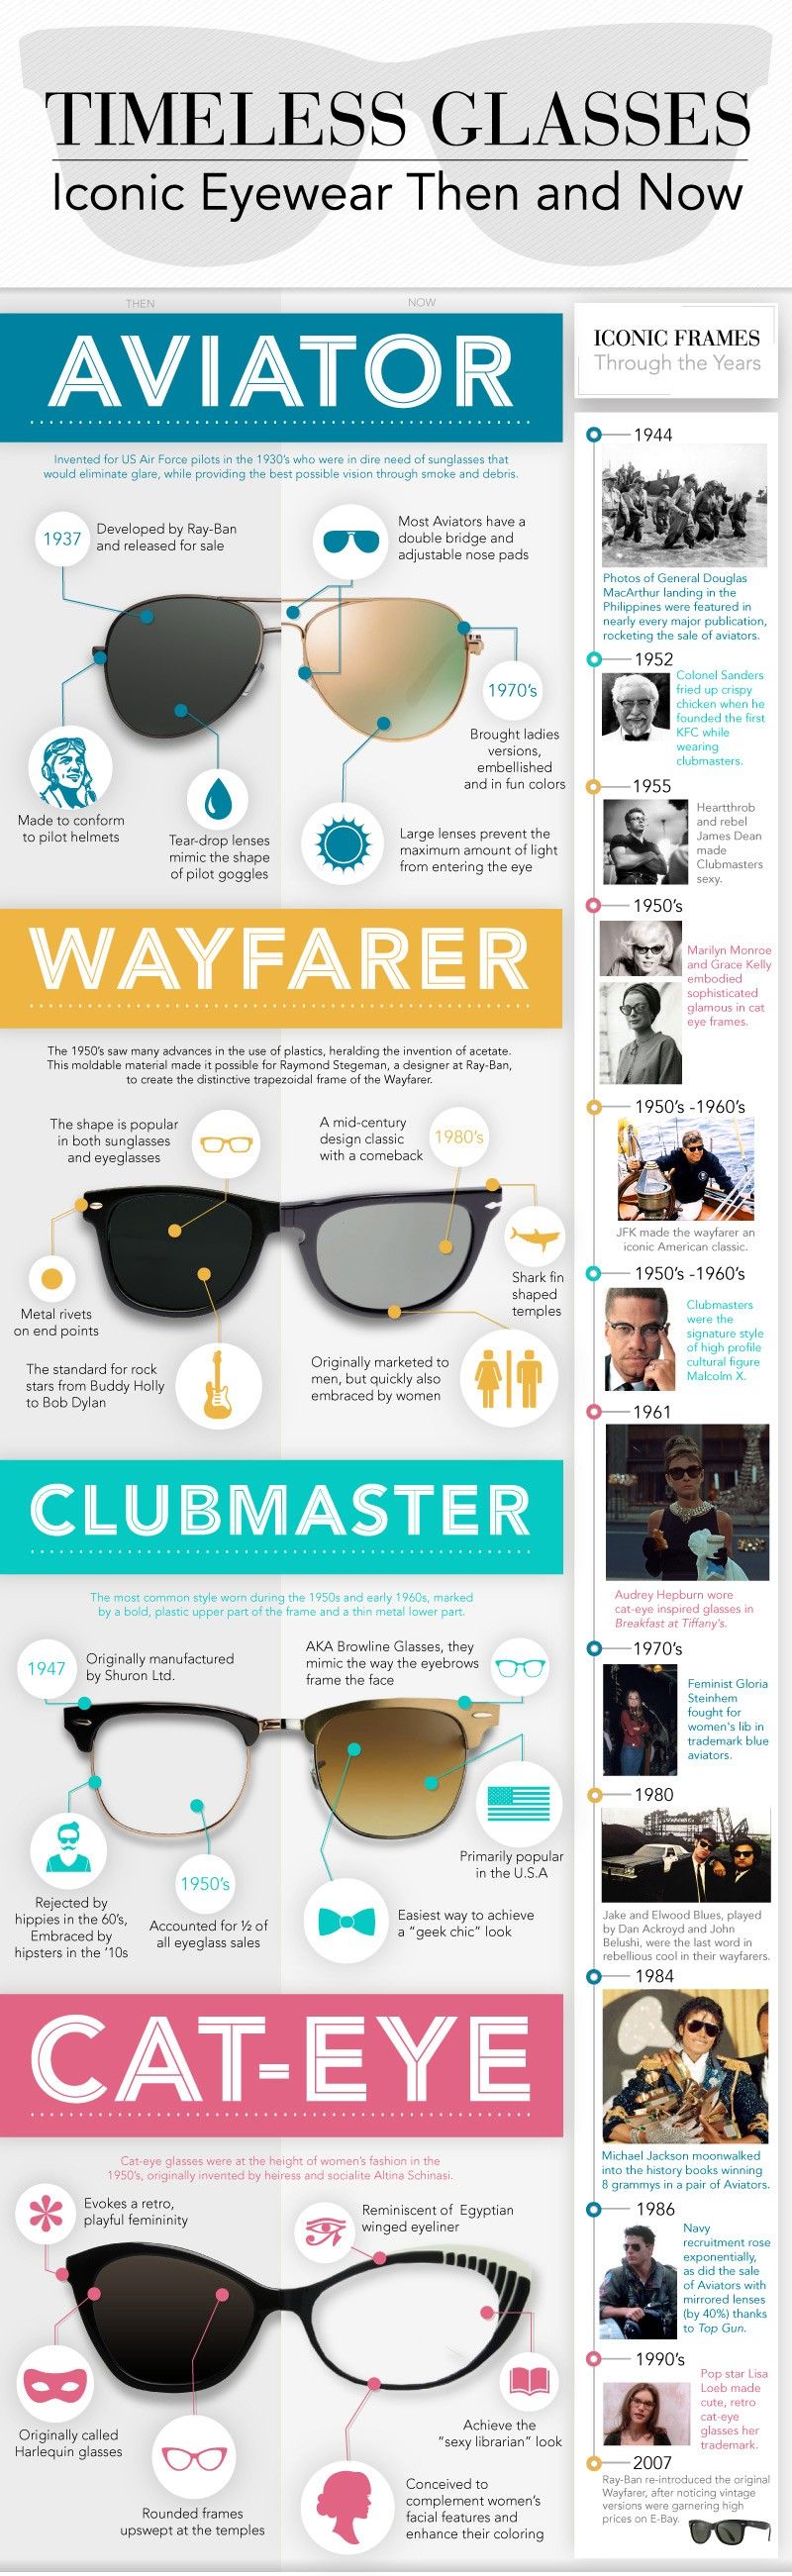 wayfarer shape eyeglasses